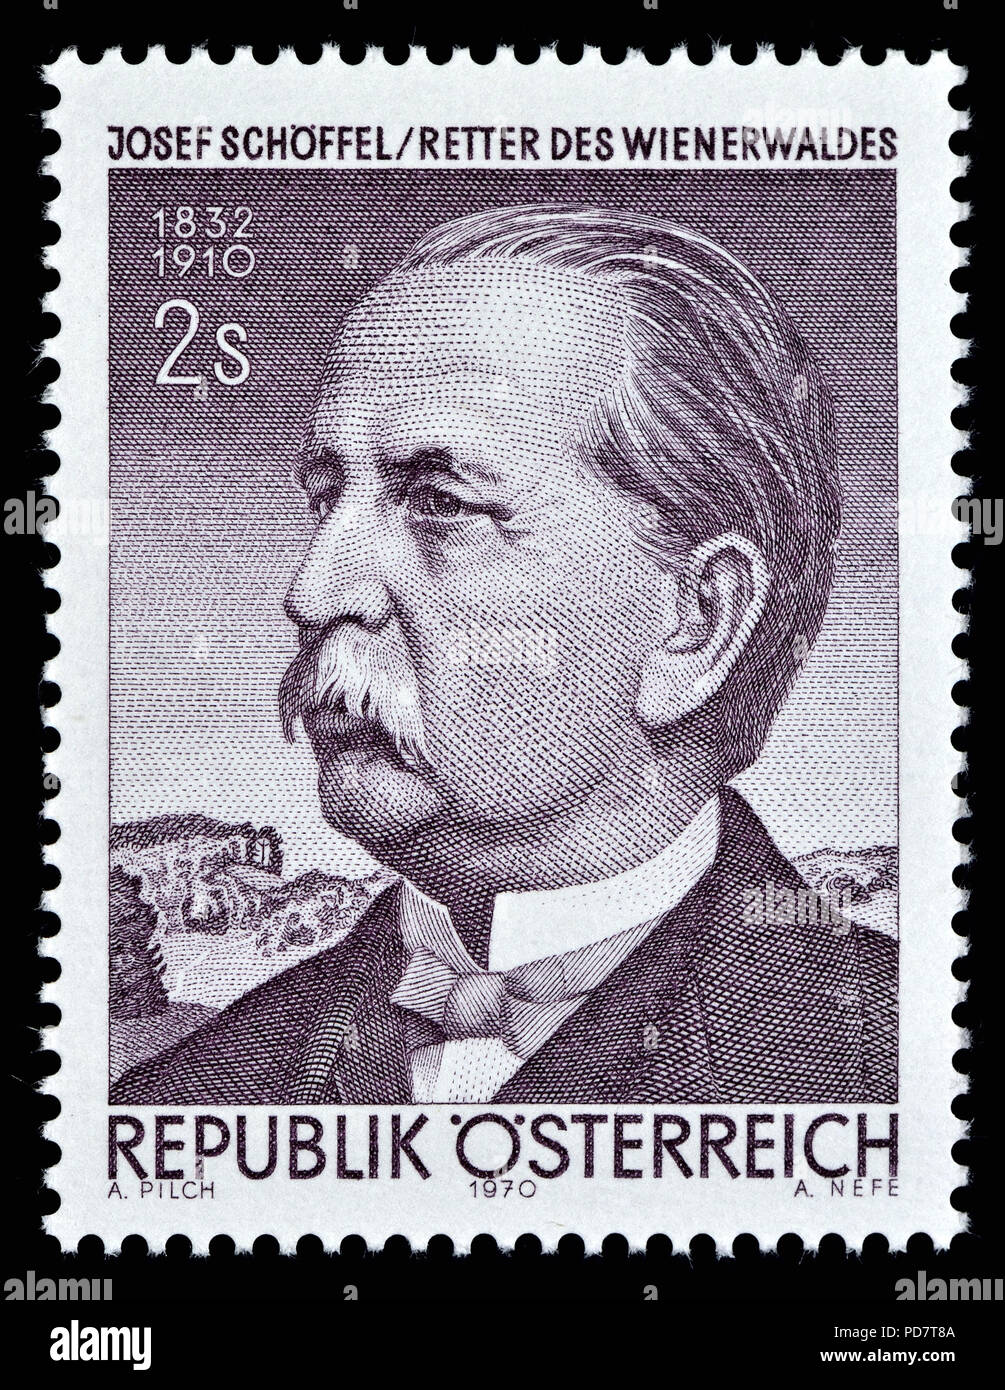 Österreichische Briefmarke (1970): Josef Schöffel (1832-1910), österreichischer Journalist, Politiker und Naturschützer avior der Vienna Woods' Stockfoto